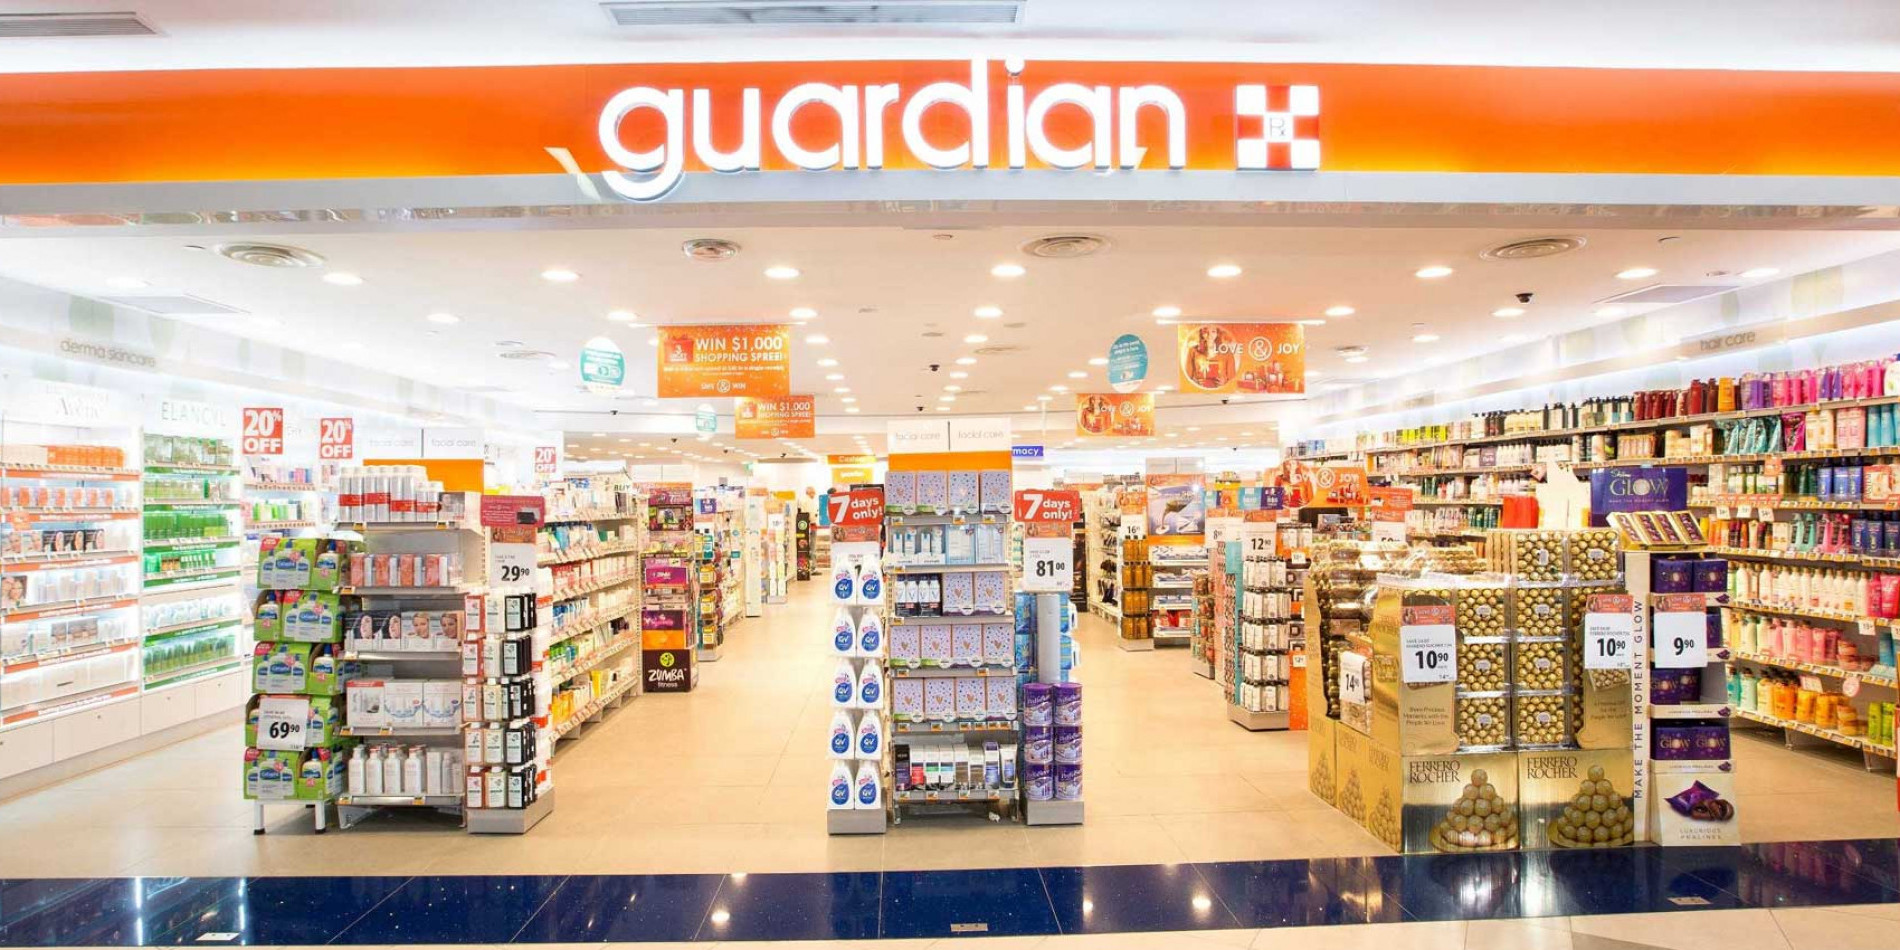 Guardian đang có hơn 500 thương hiệu uy tín về chăm sóc sức khoẻ và sắc đẹp